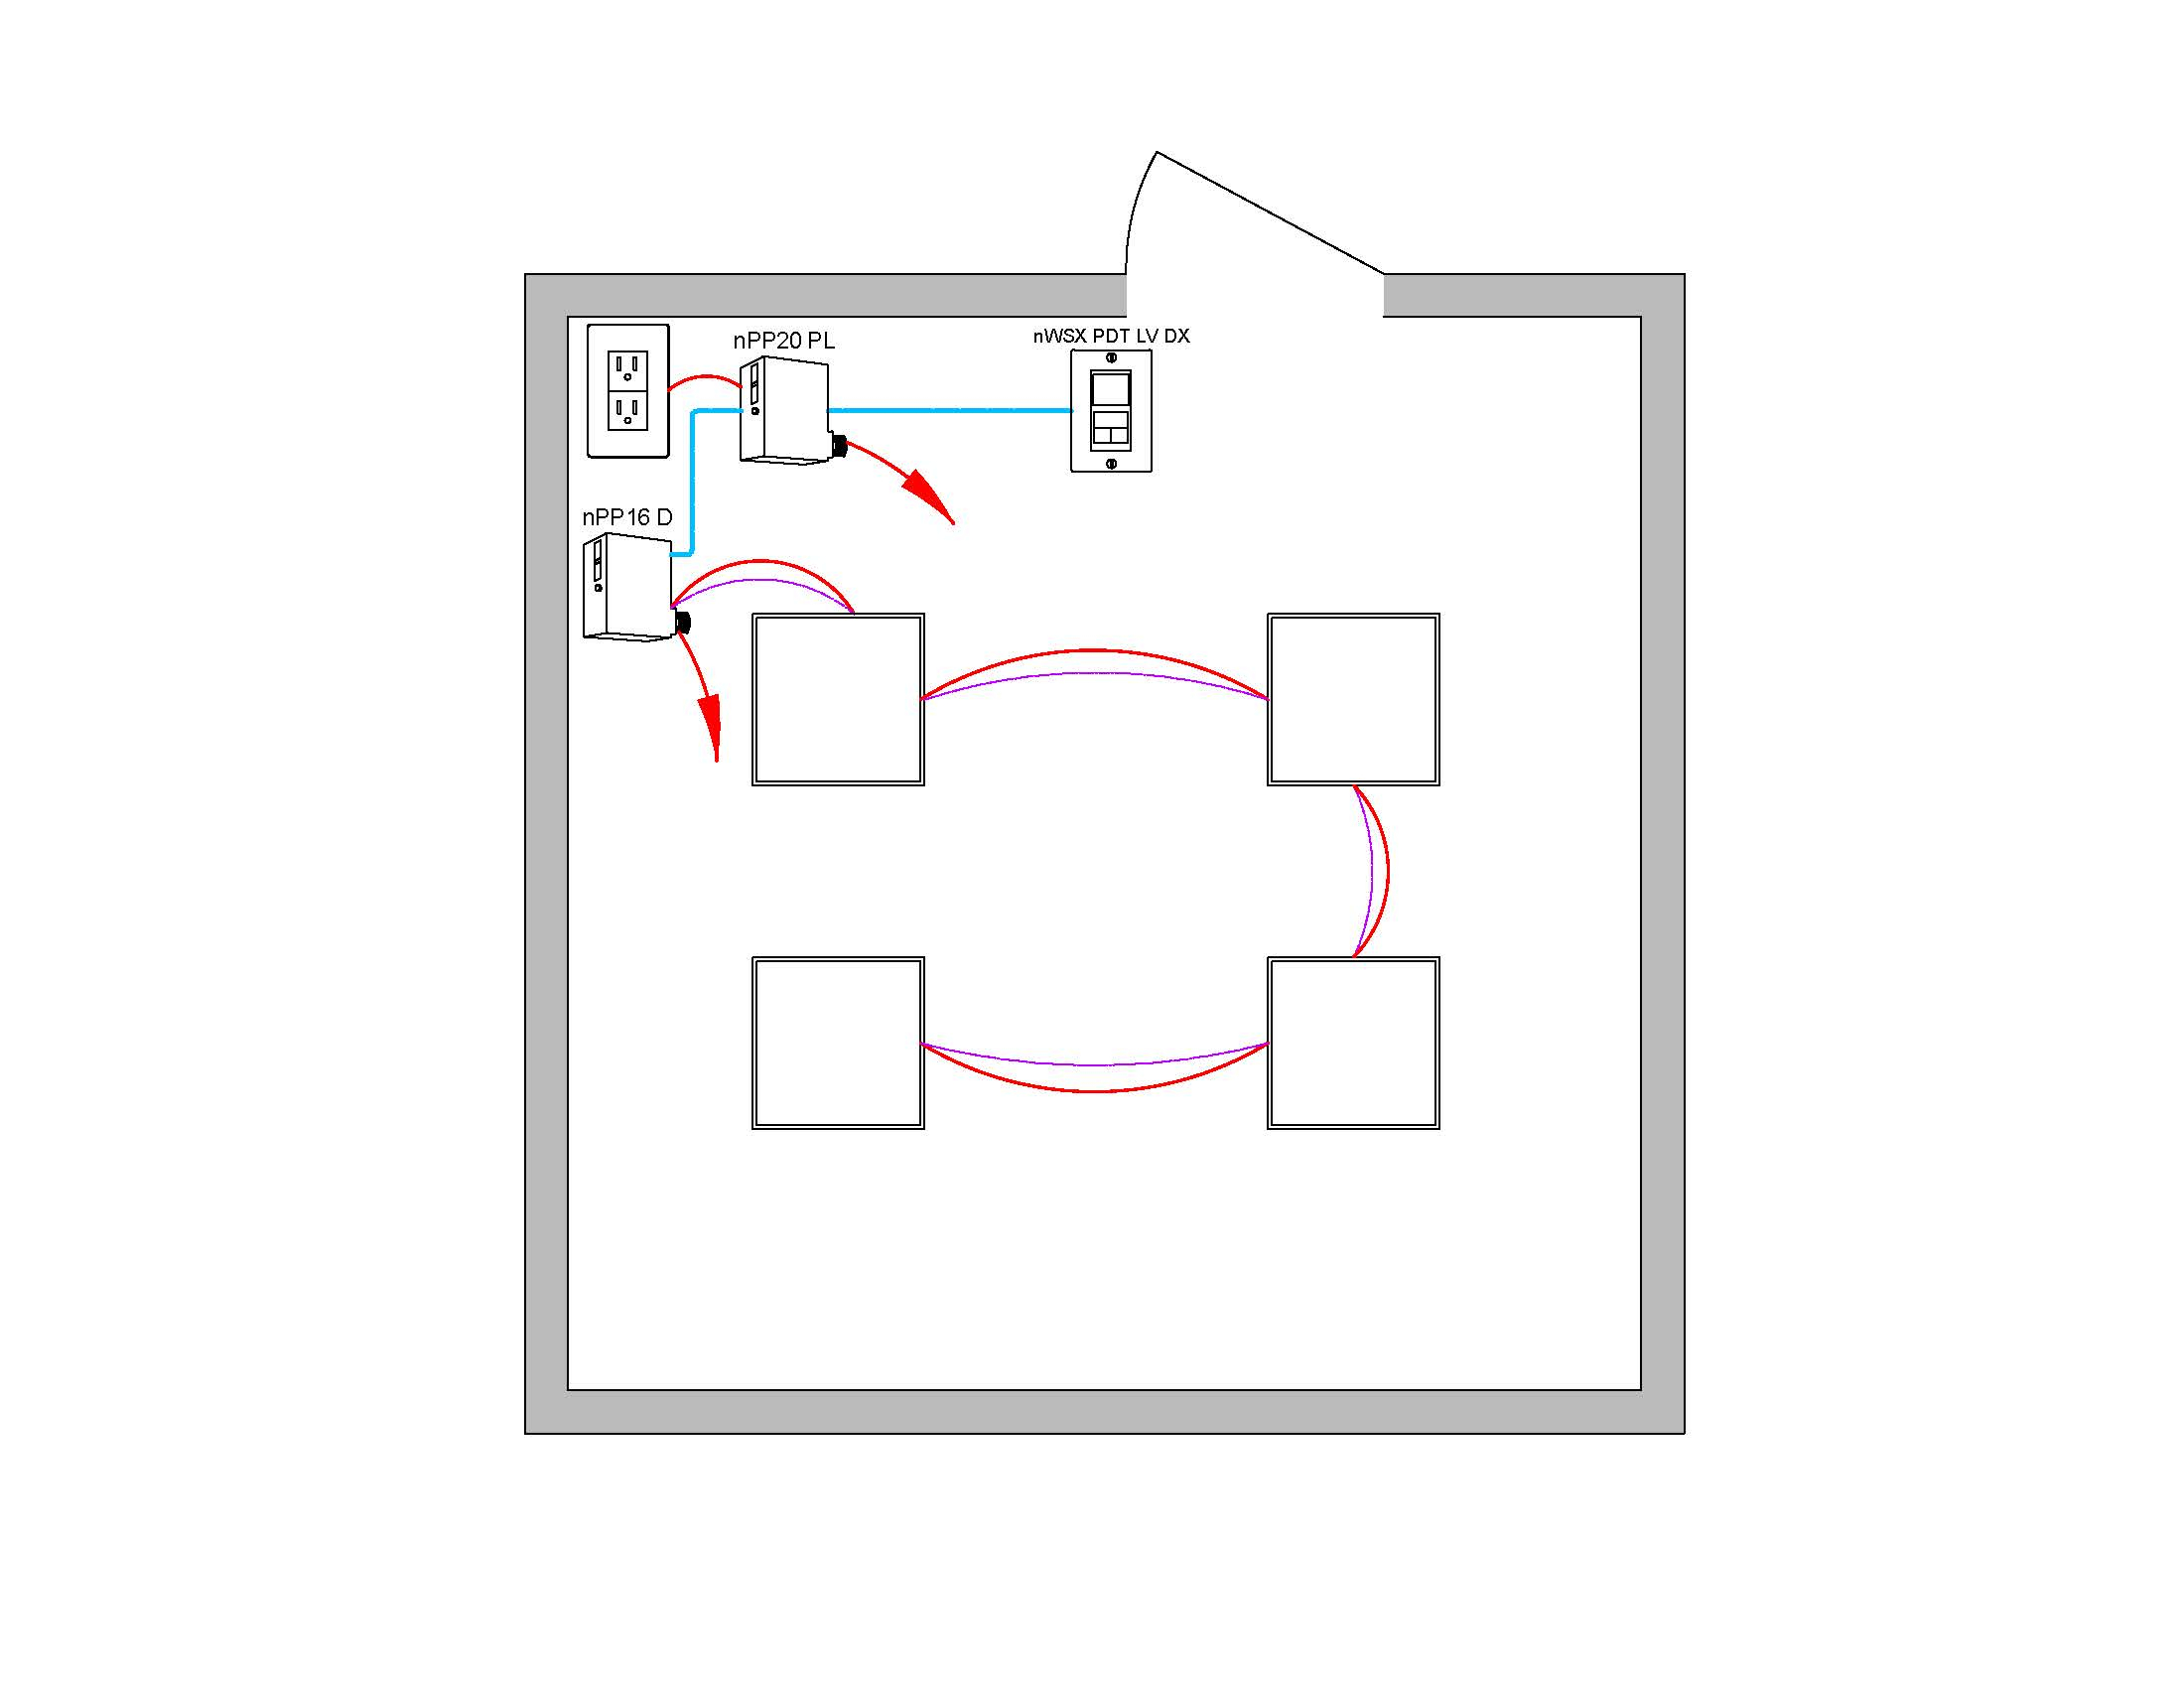 Fs_2619] Nlight Wiring Diagram Schematic Wiring with Npp16 D Er Wiring Diagram